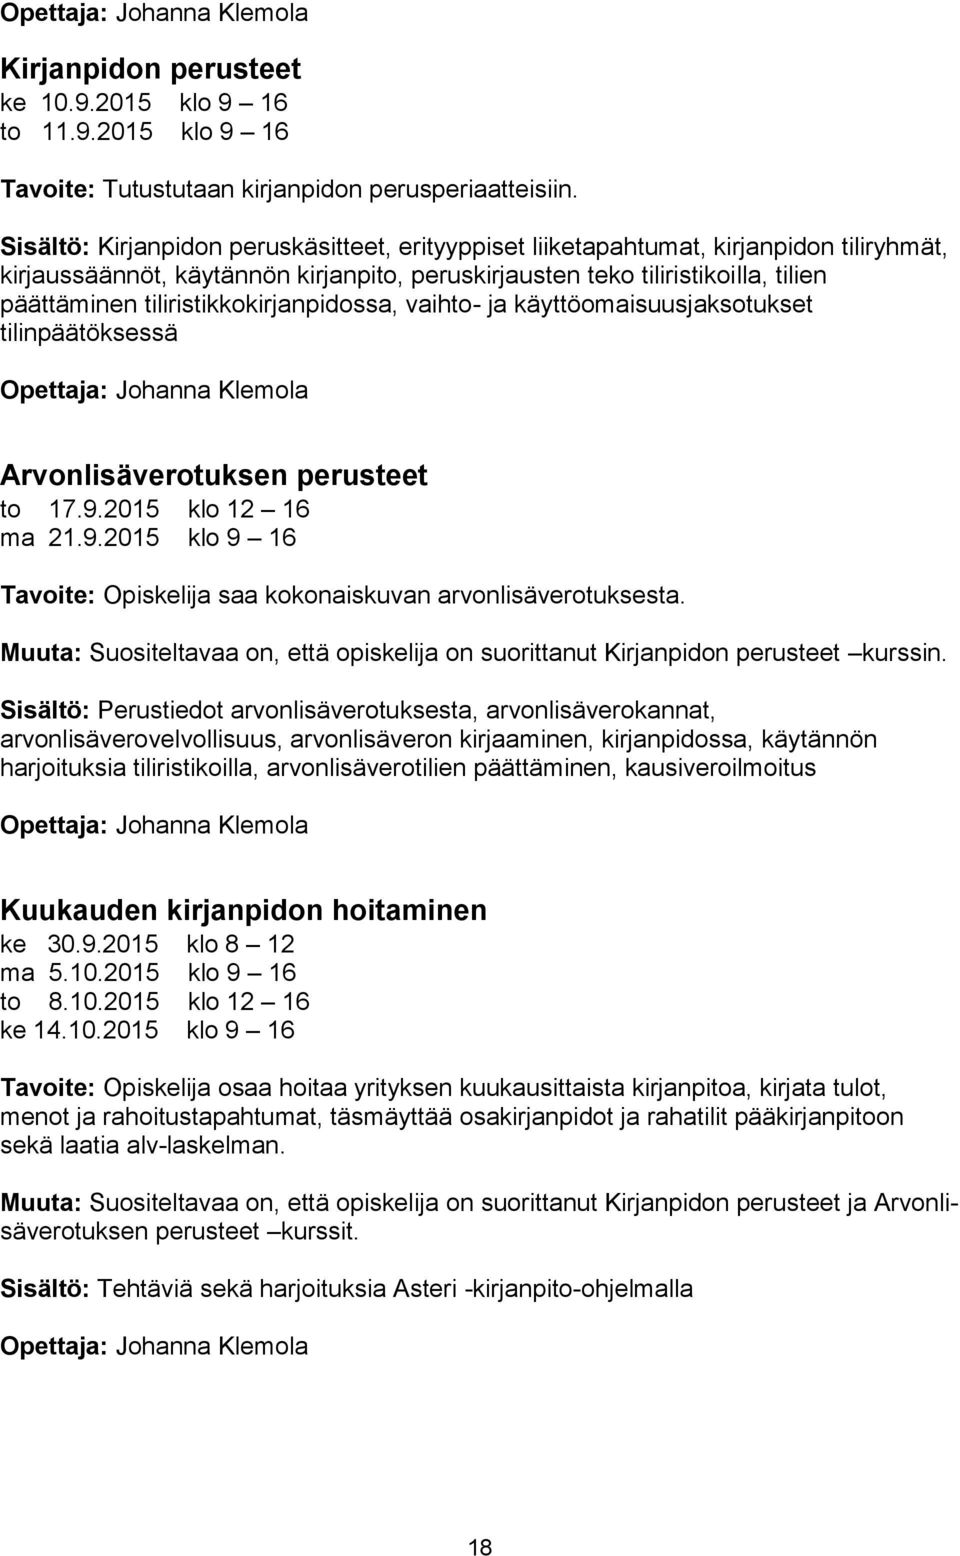 tiliristikkokirjanpidossa, vaihto- ja käyttöomaisuusjaksotukset tilinpäätöksessä Opettaja: Johanna Klemola Arvonlisäverotuksen perusteet to 17.9.